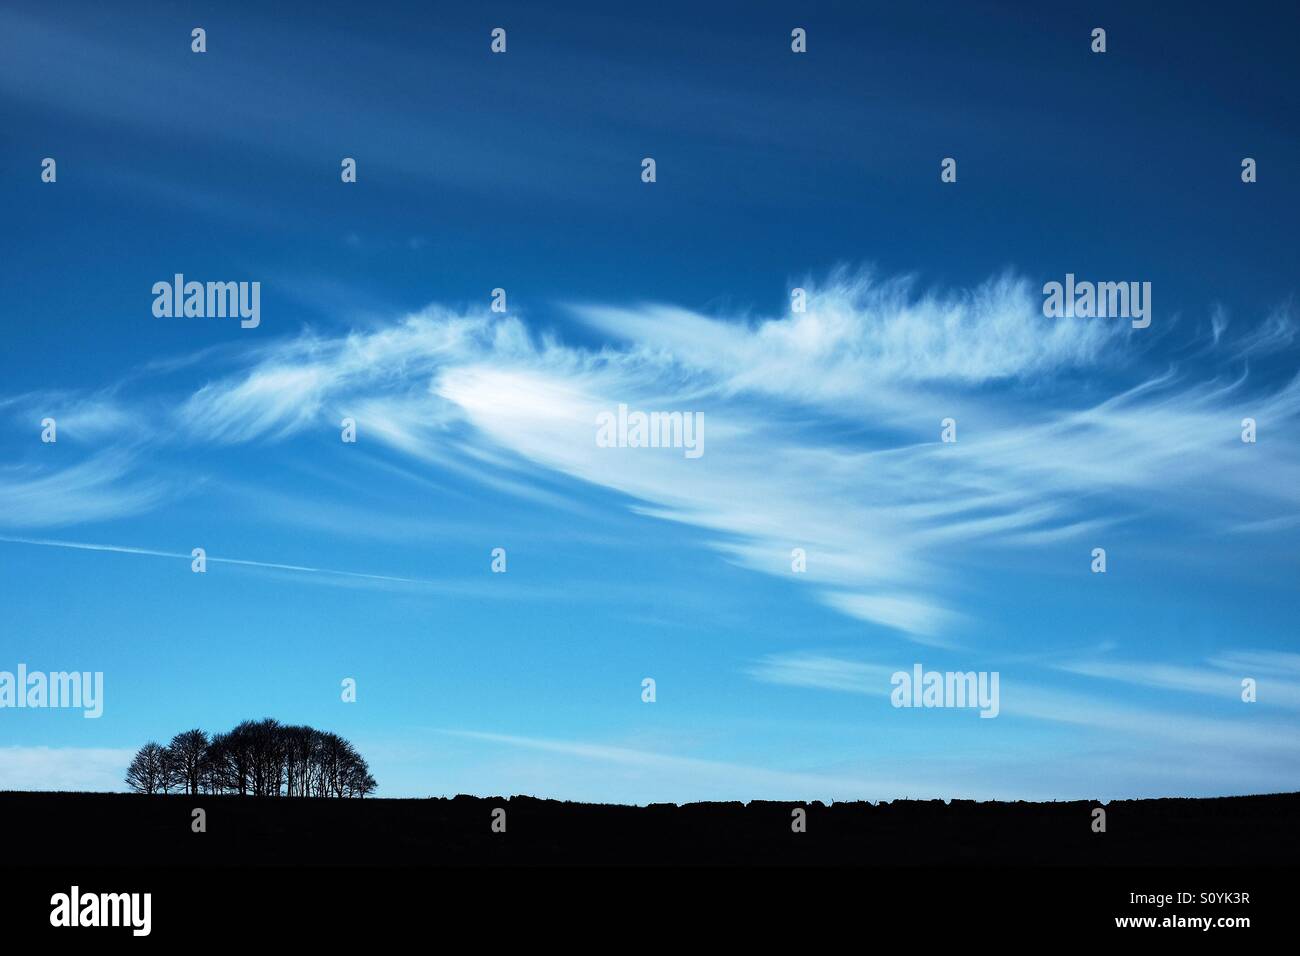 Les cirrus dans un ciel bleu au-dessus d'un taillis d'arbres en silhouette avec un mur en pierre sèche. Banque D'Images